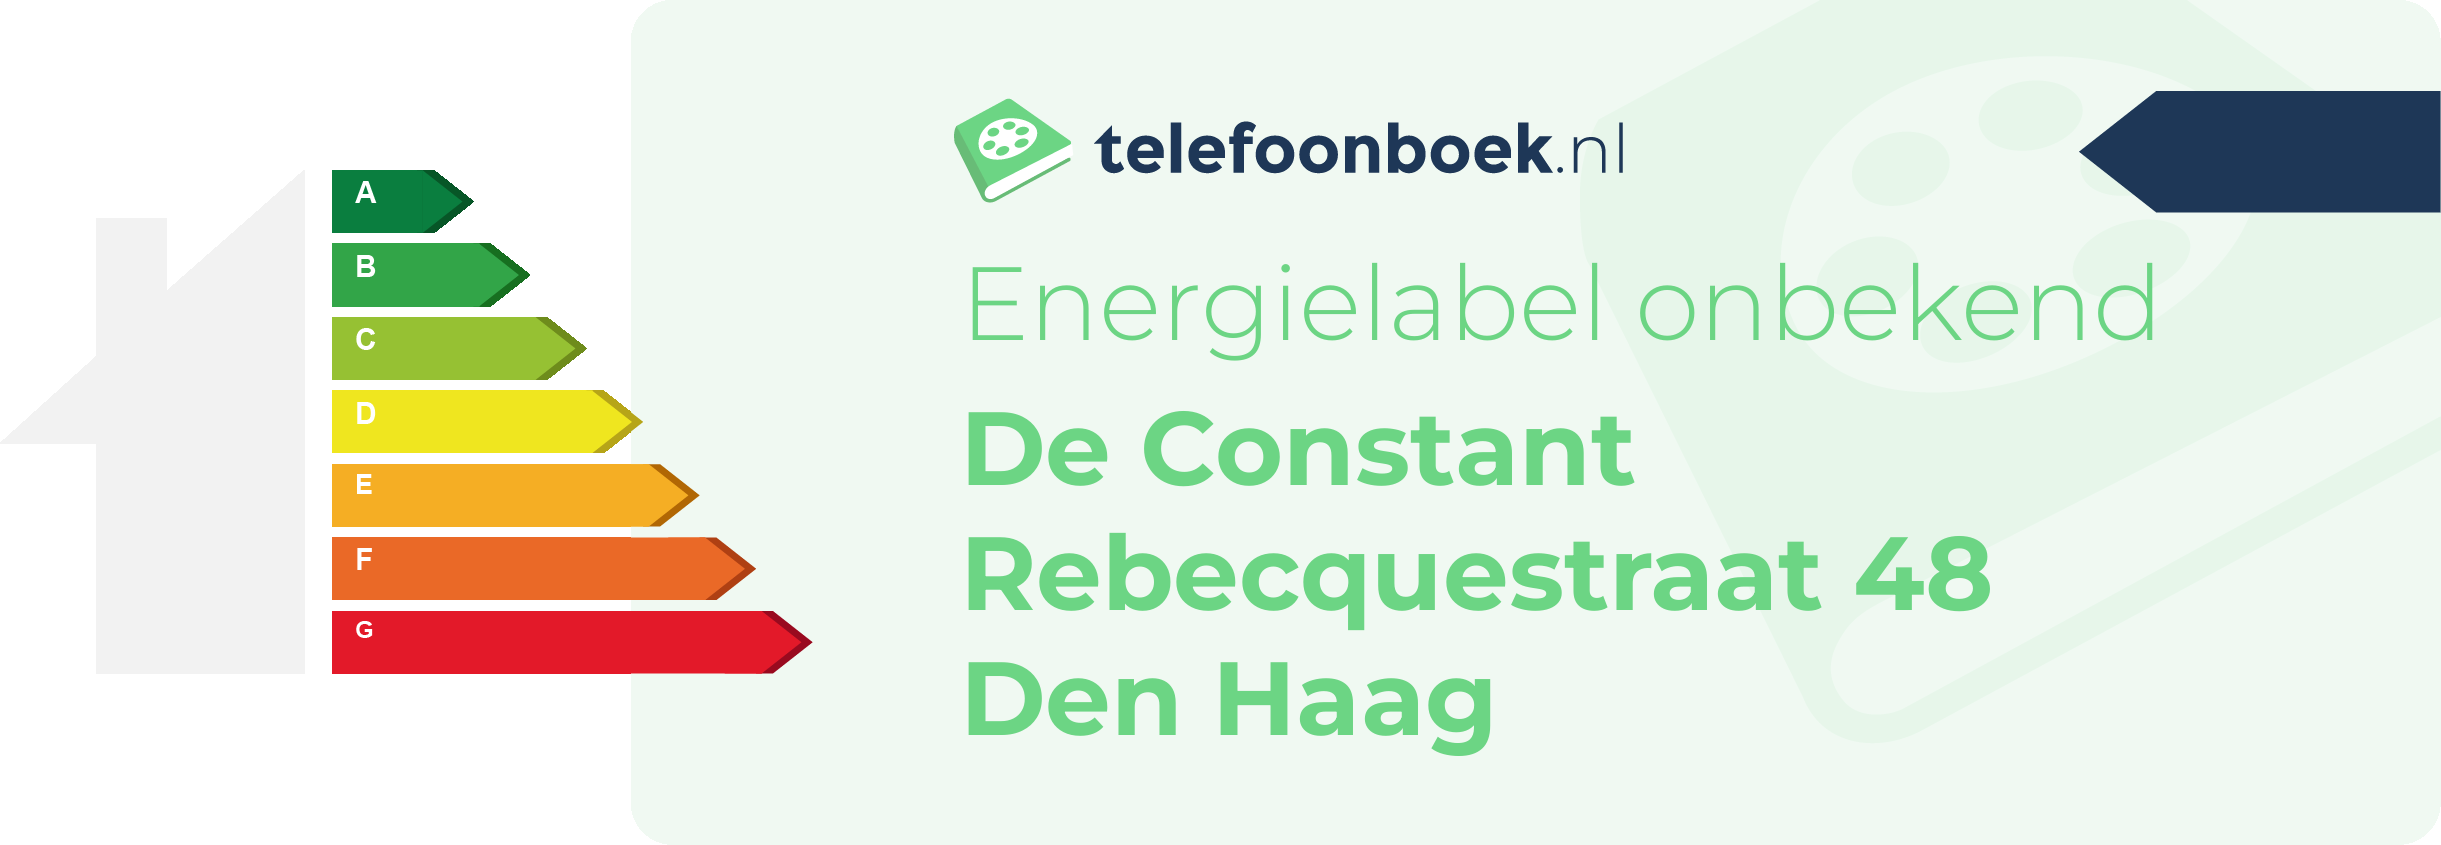 Energielabel De Constant Rebecquestraat 48 Den Haag